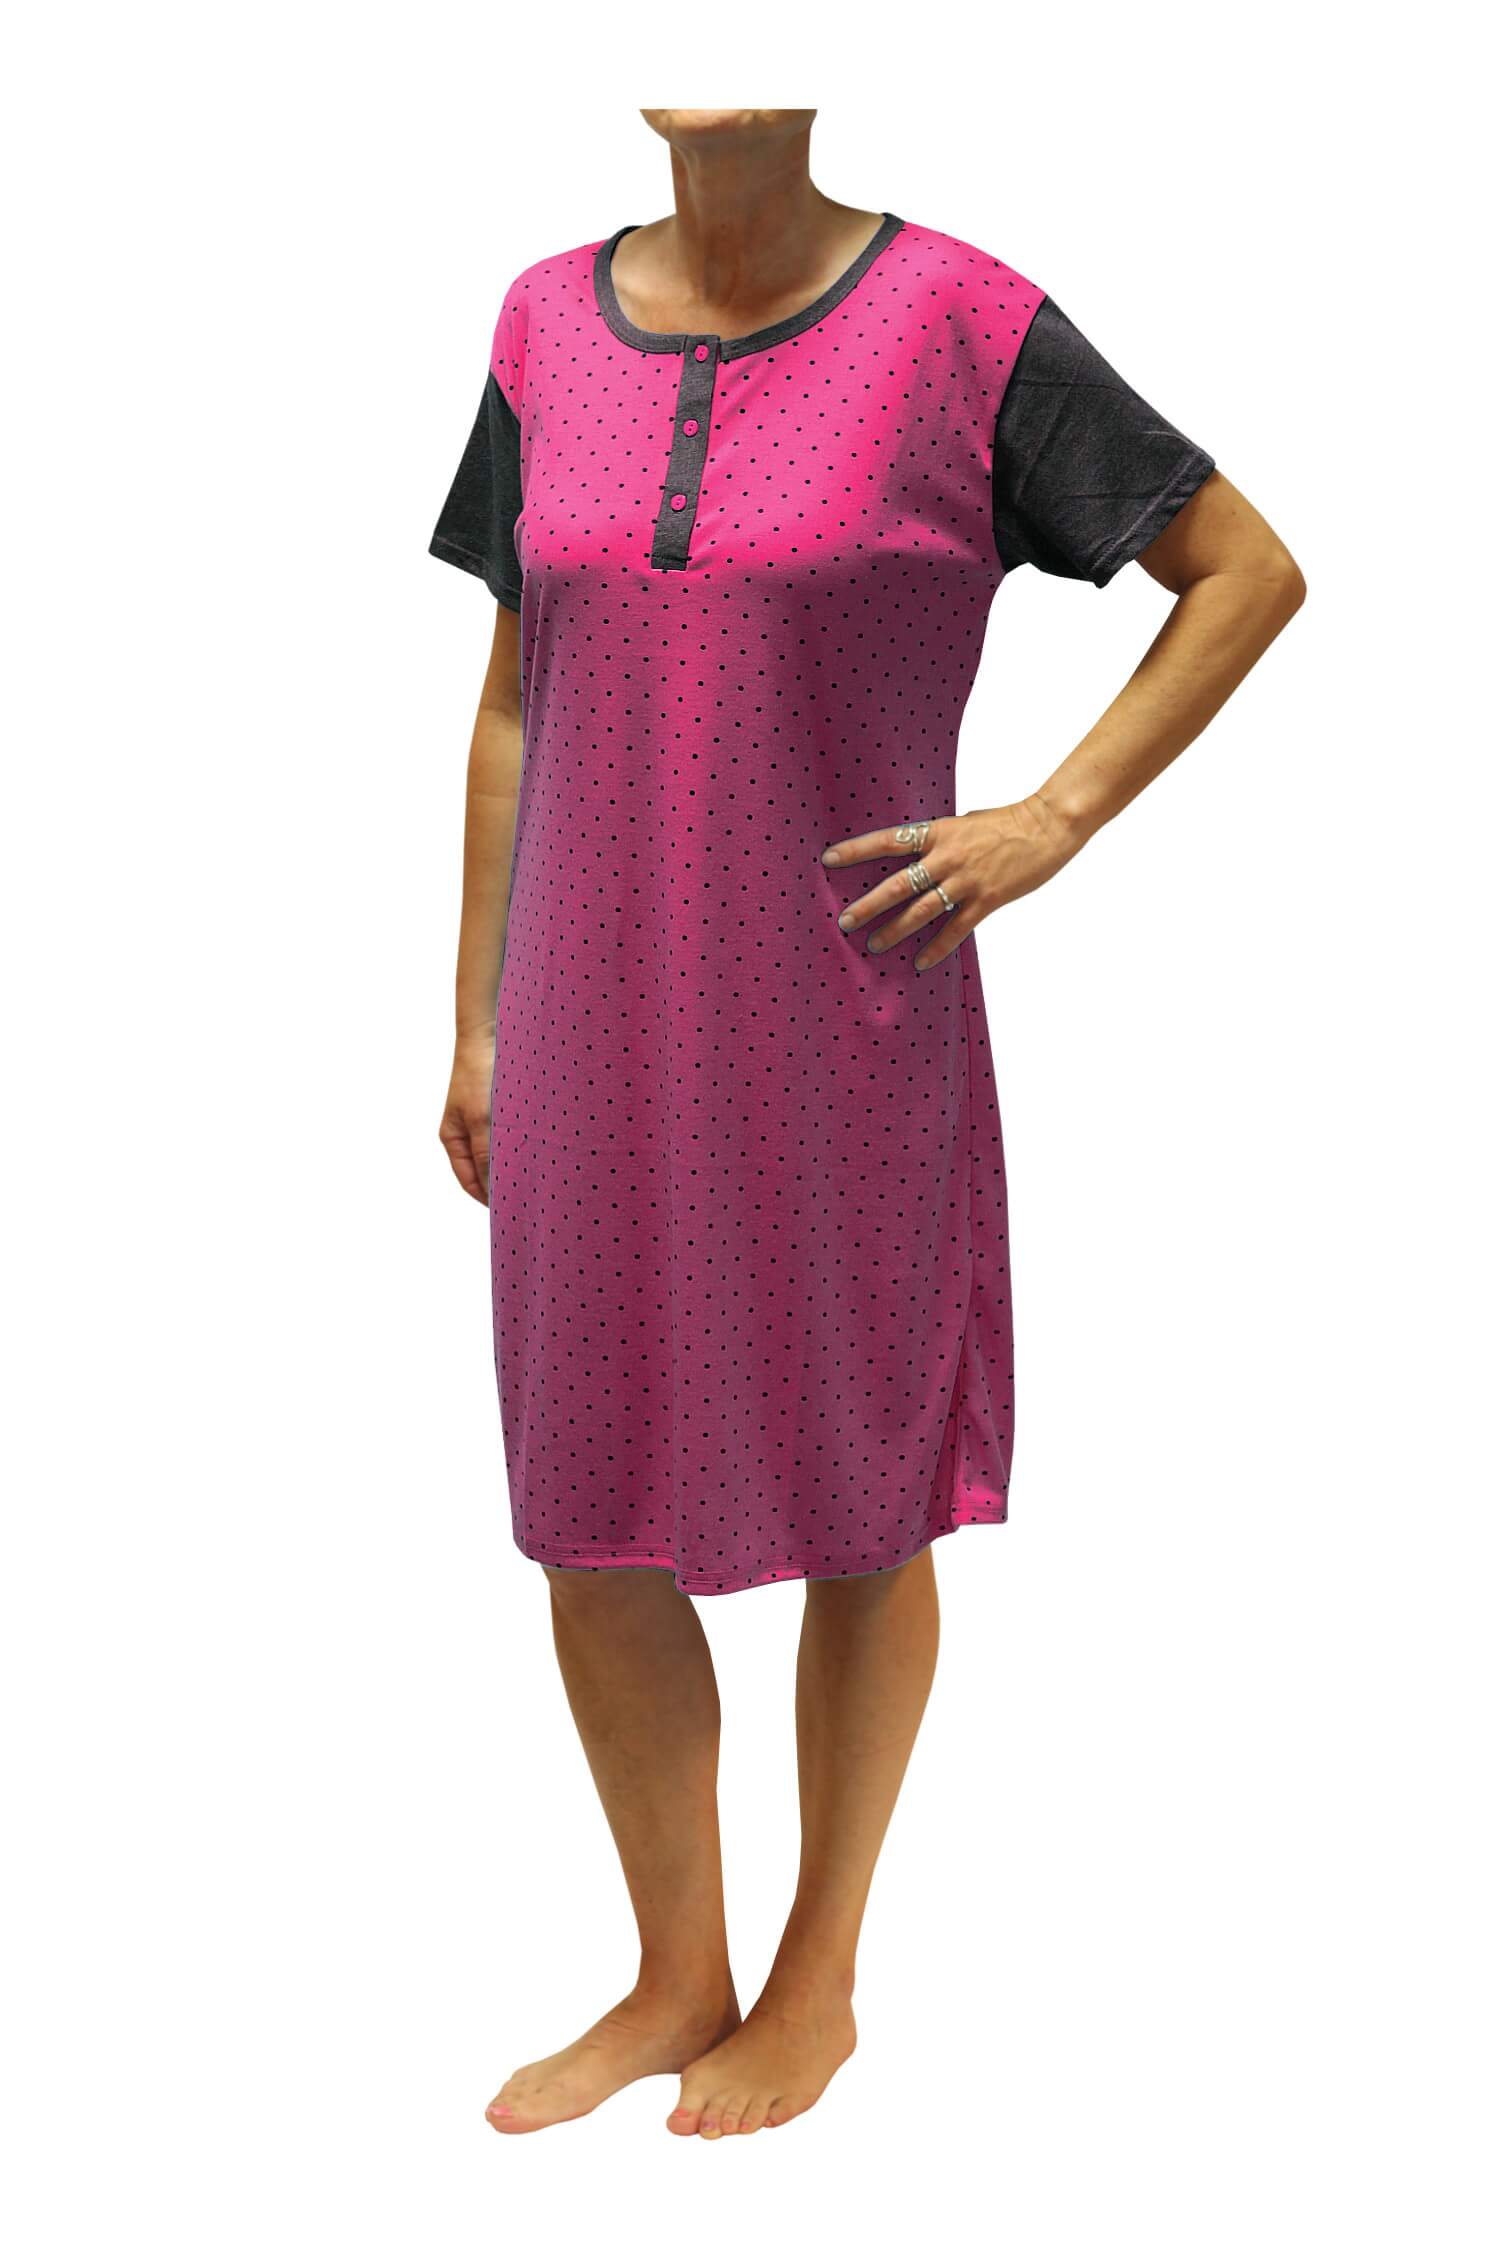 Adéla dámská noční košile s puntíky DNU329-NT XL růžová